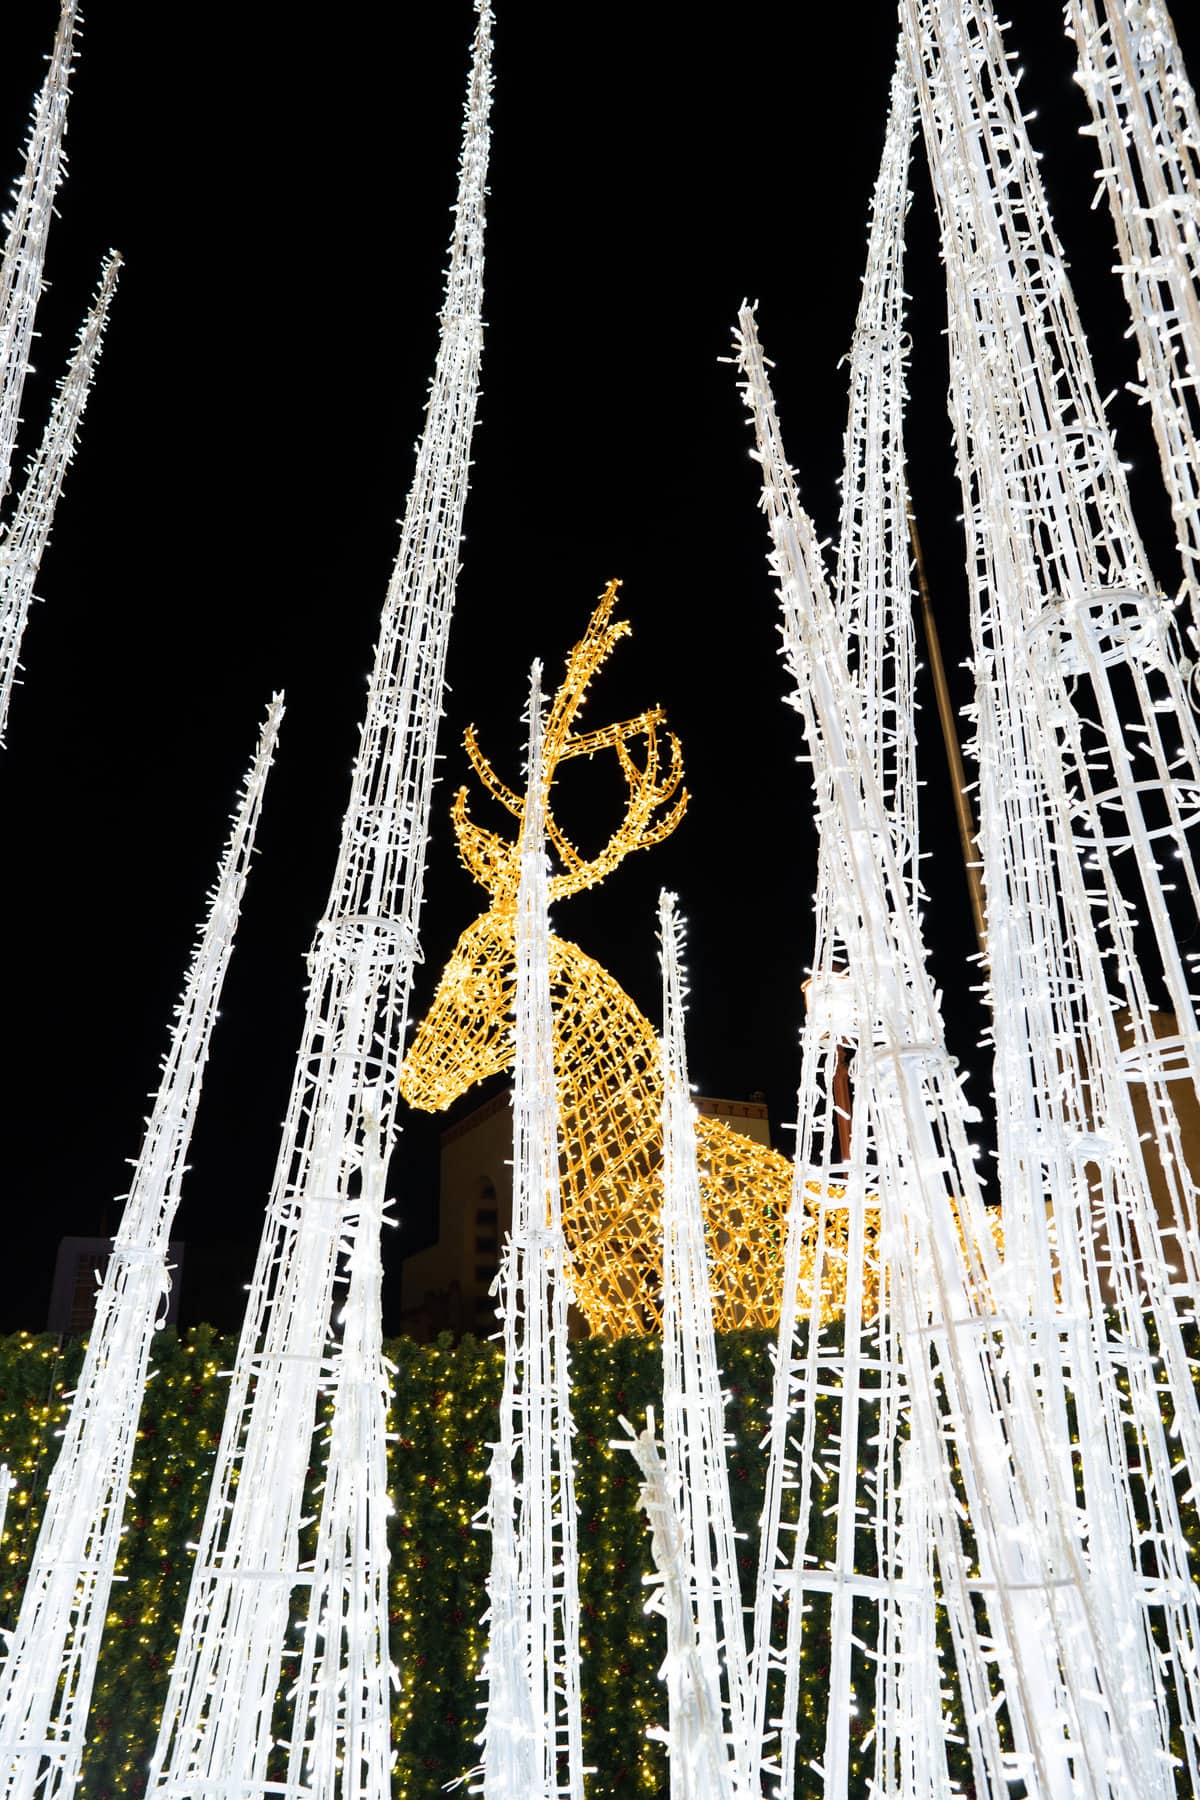 a reindeer made of lights